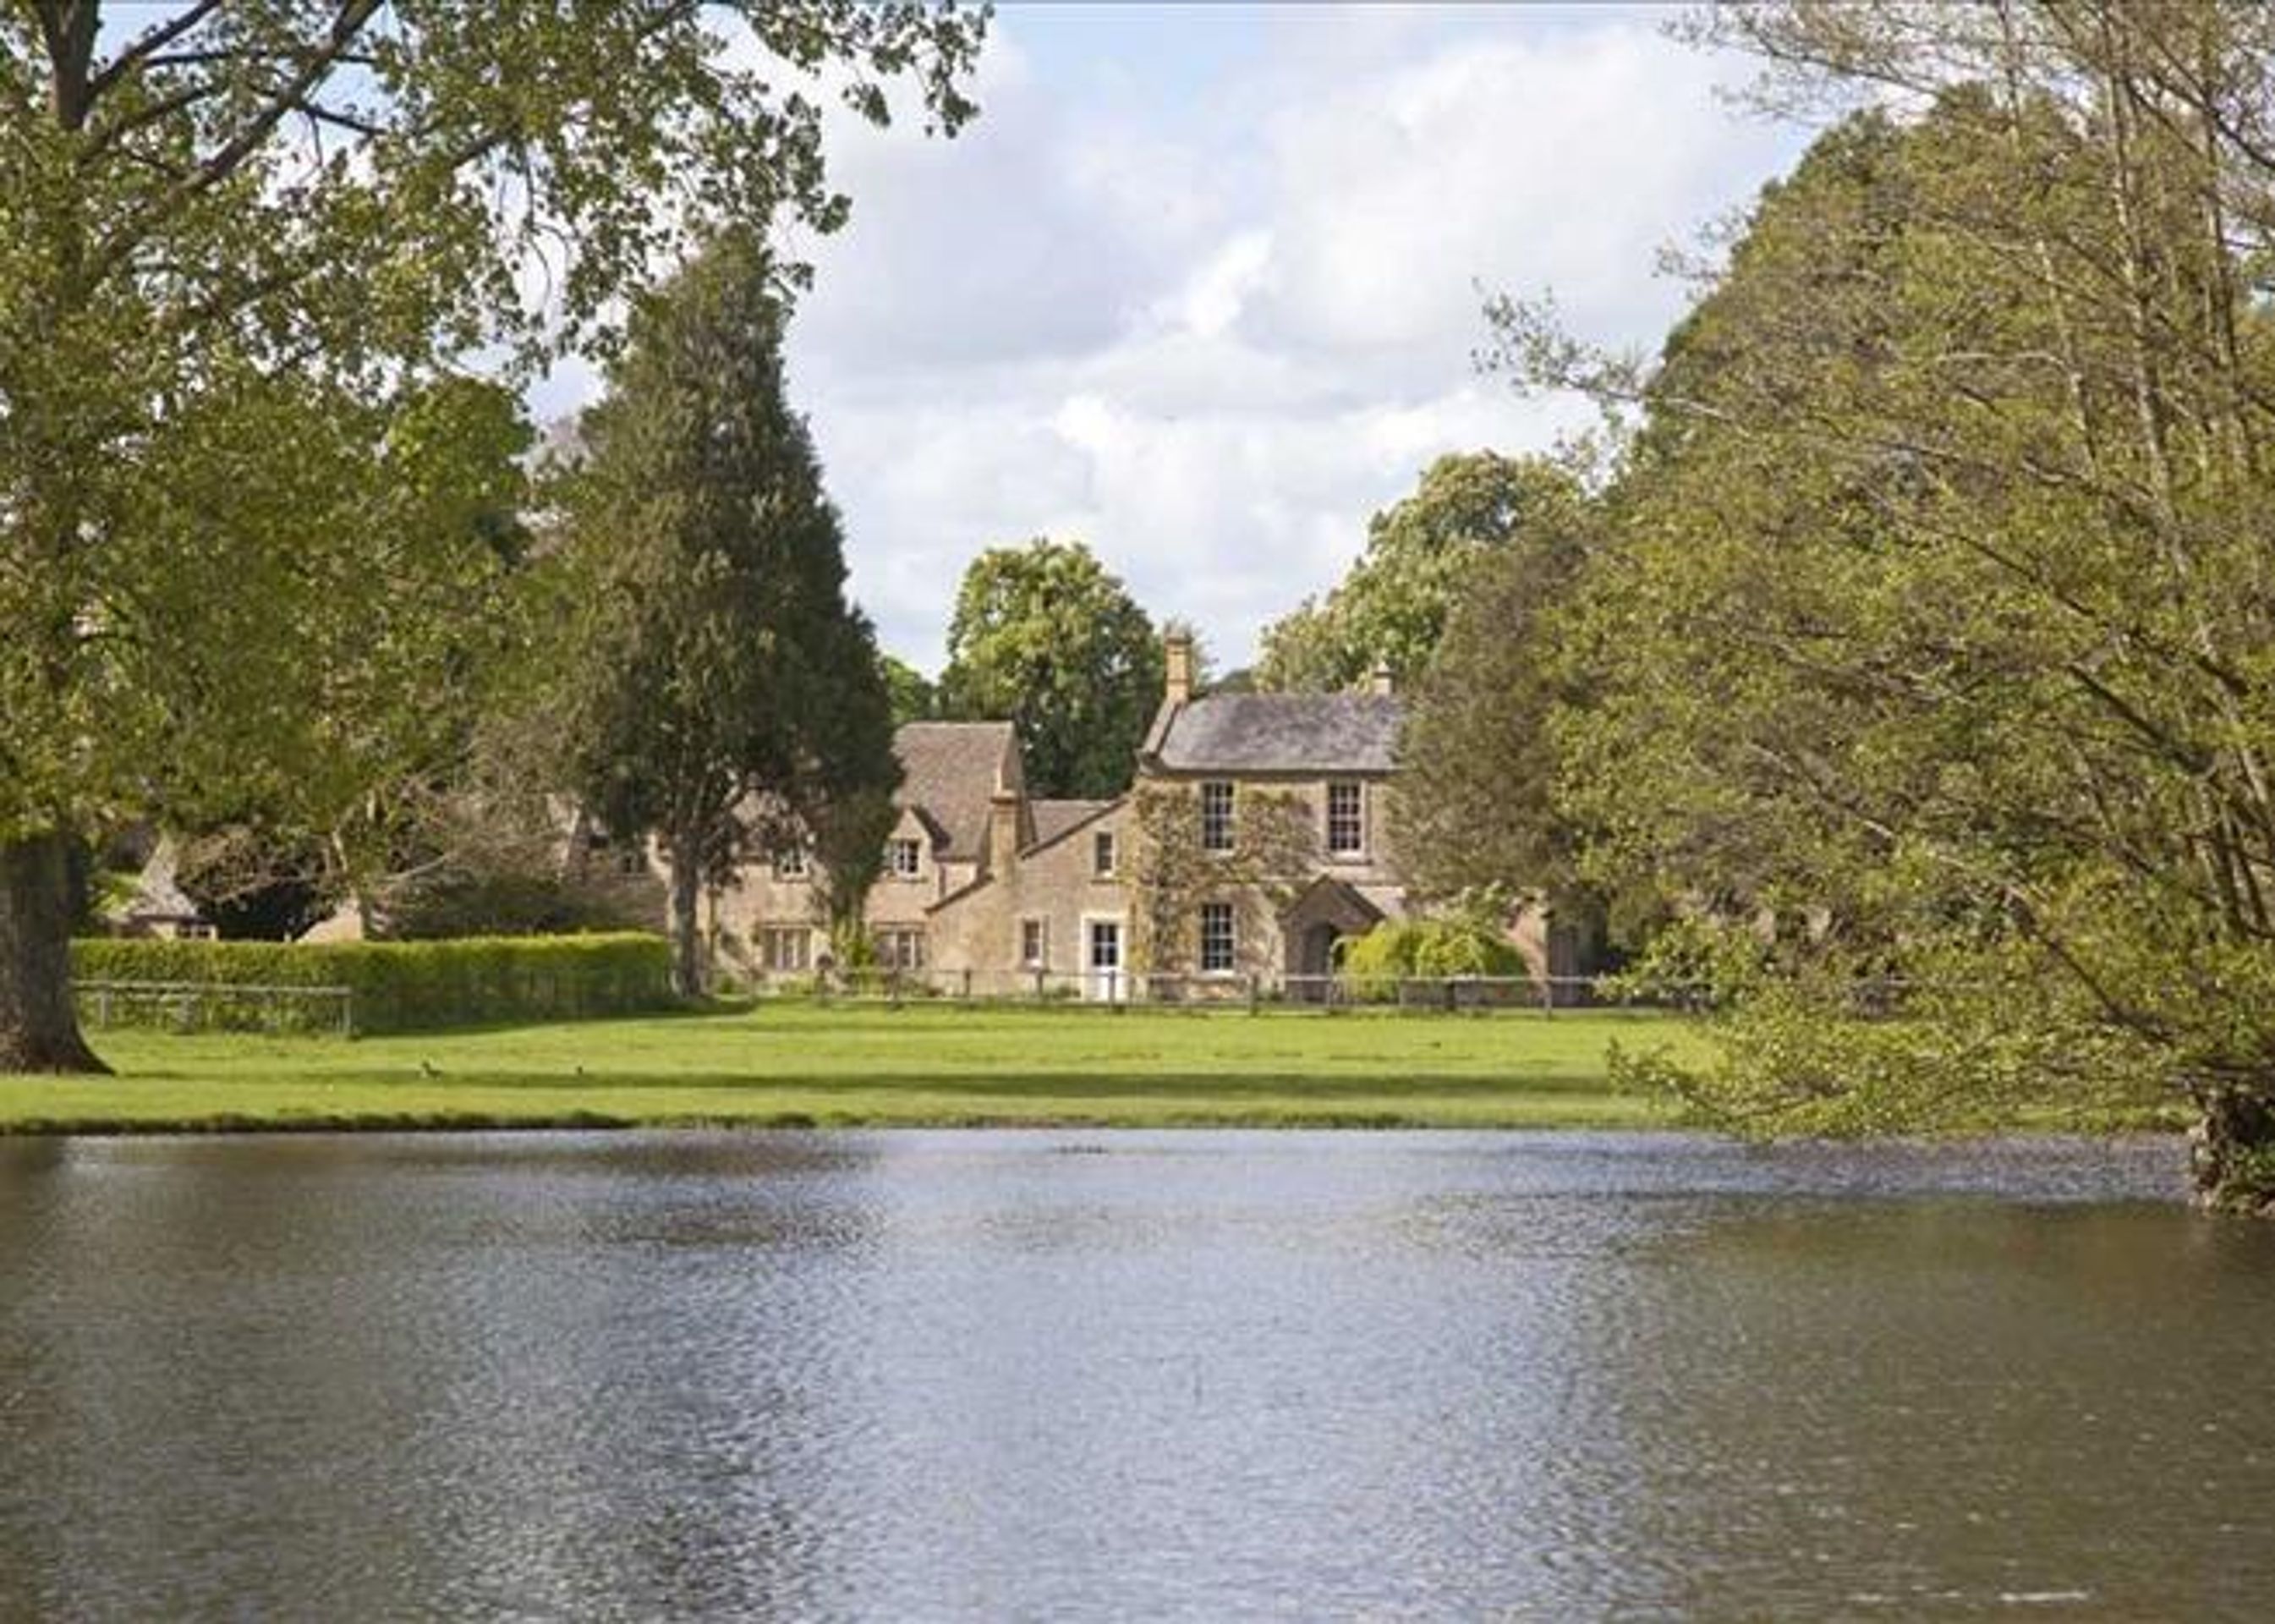 Jezero - Podívejte se, co kupují Beckhamovi: Nejdražší sídlo v Anglii! (10/11)